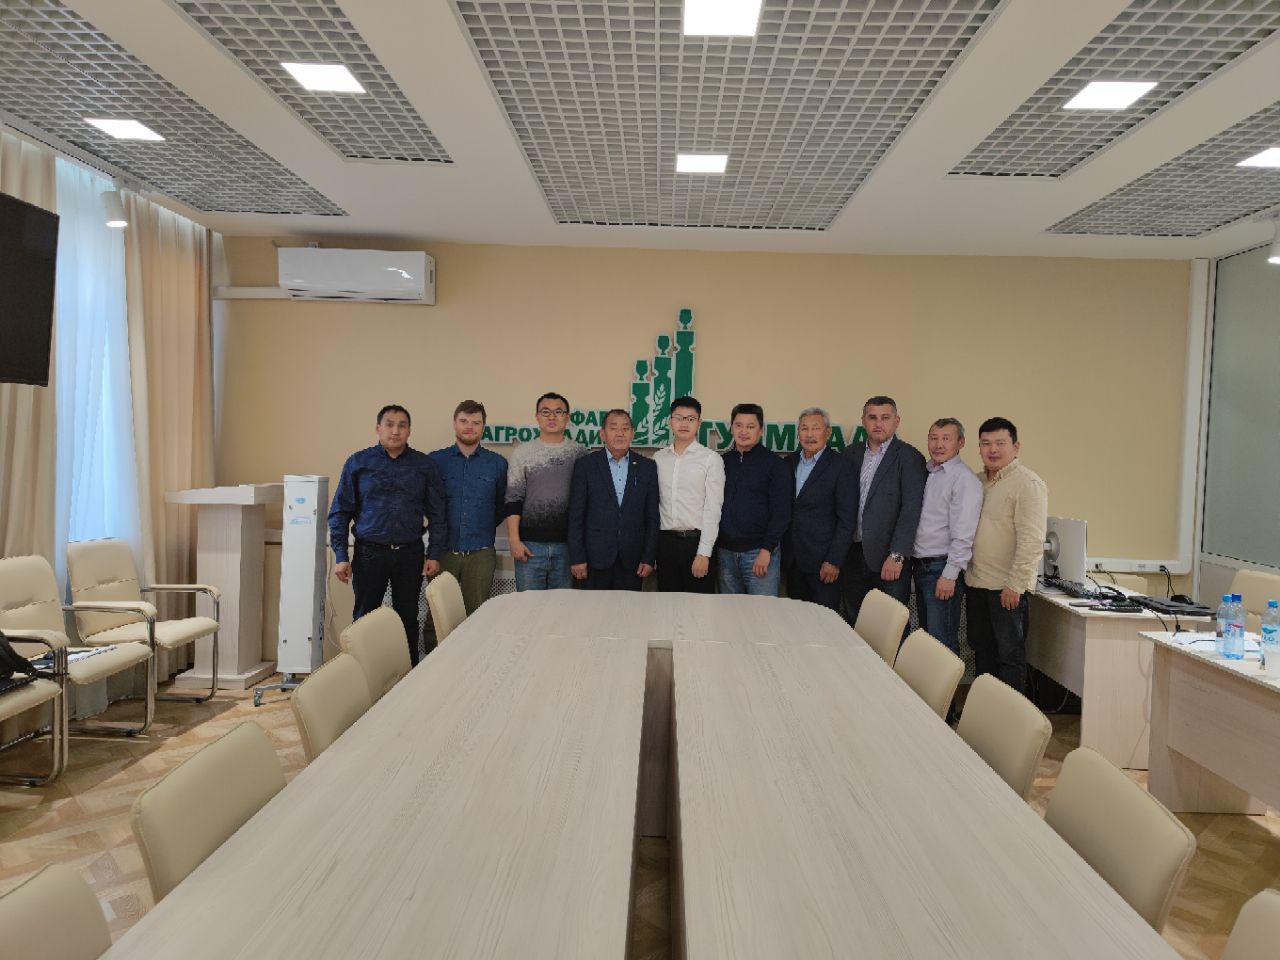 Агрохолдинг «Туймаада» будет сотрудничать с компанией из Китая по строительству здания для свинокомплекса